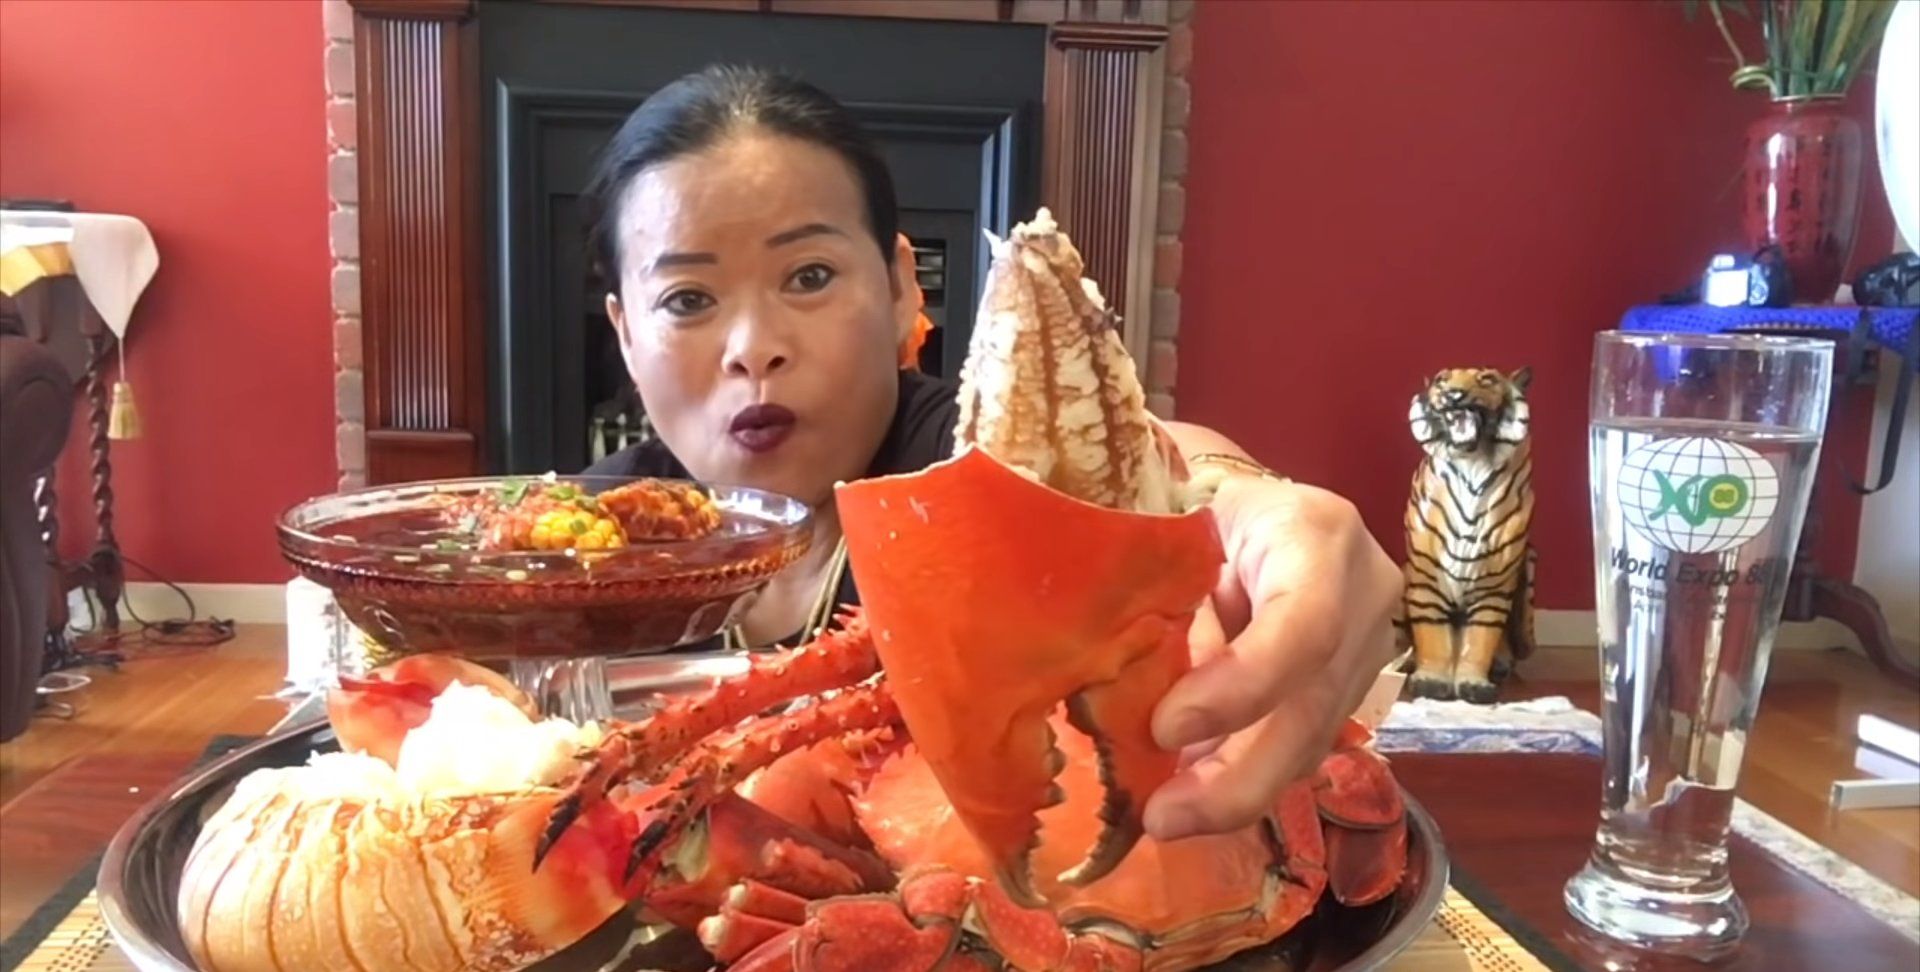 泰国富婆直播吃大龙虾,大螃蟹,网友们不淡定了,越来越